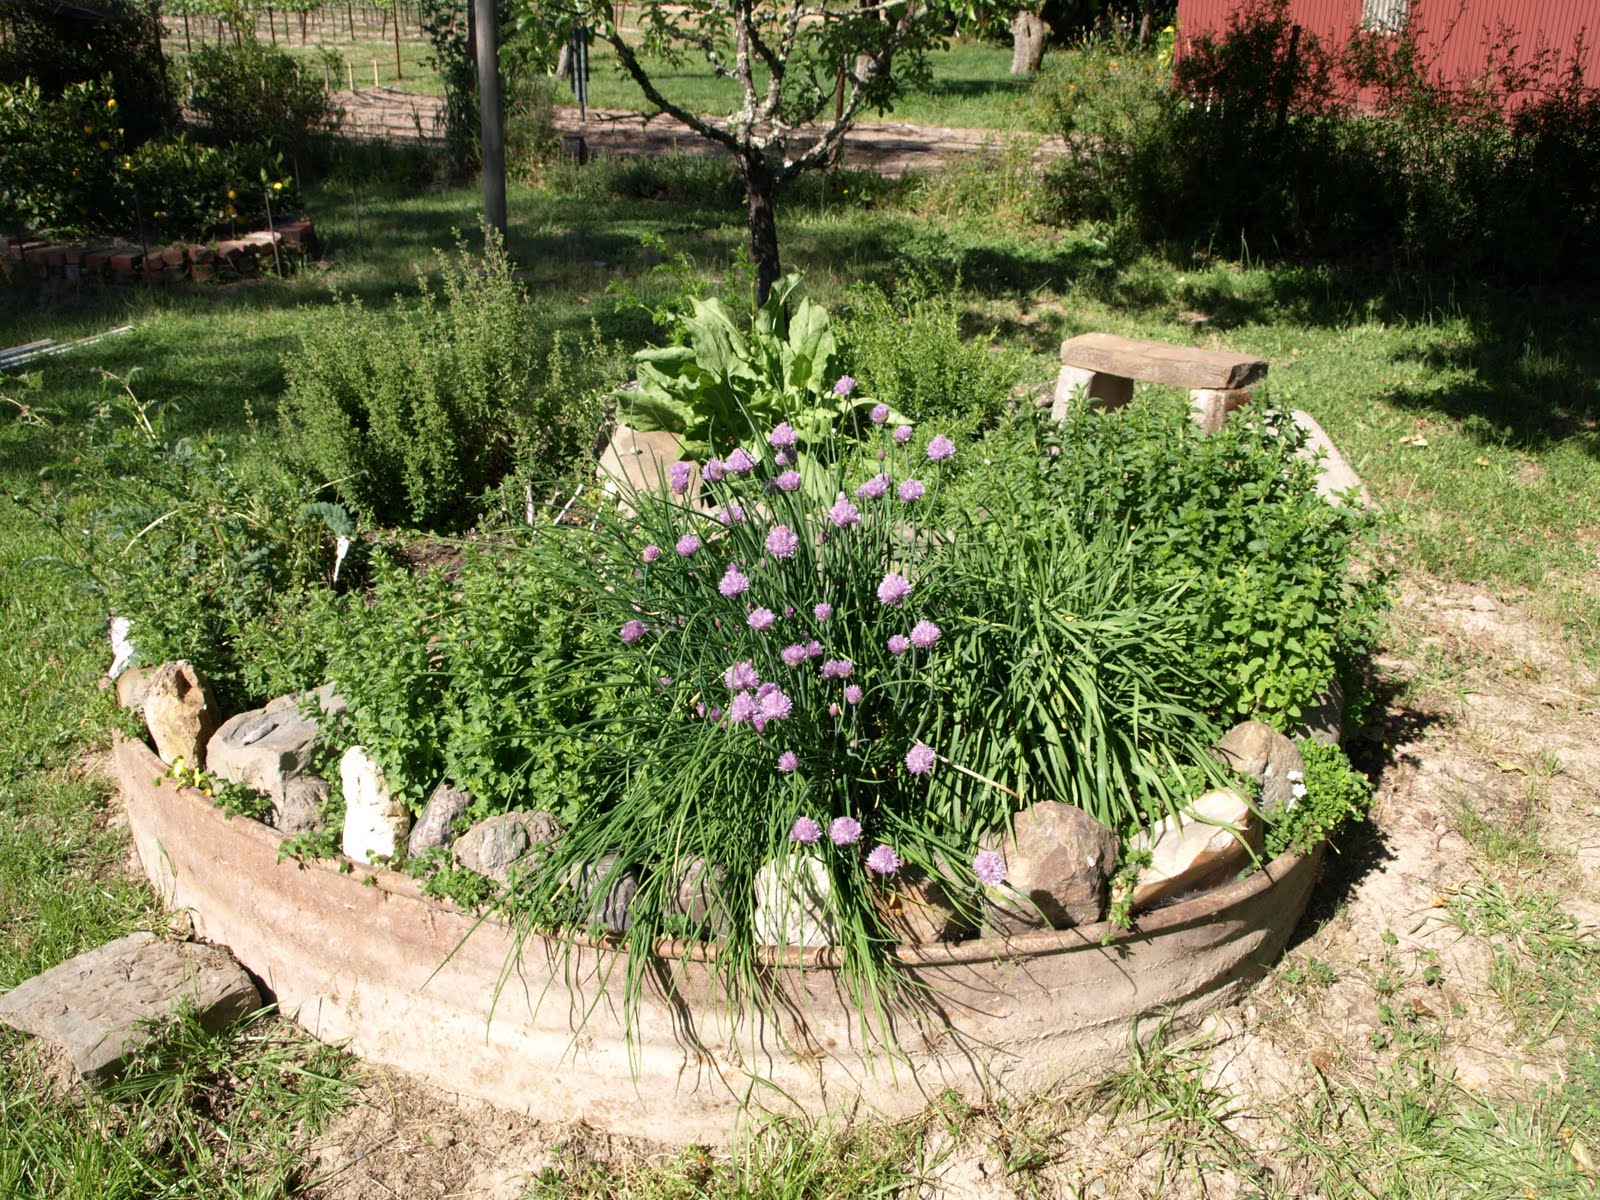 herb-garden-designs-81